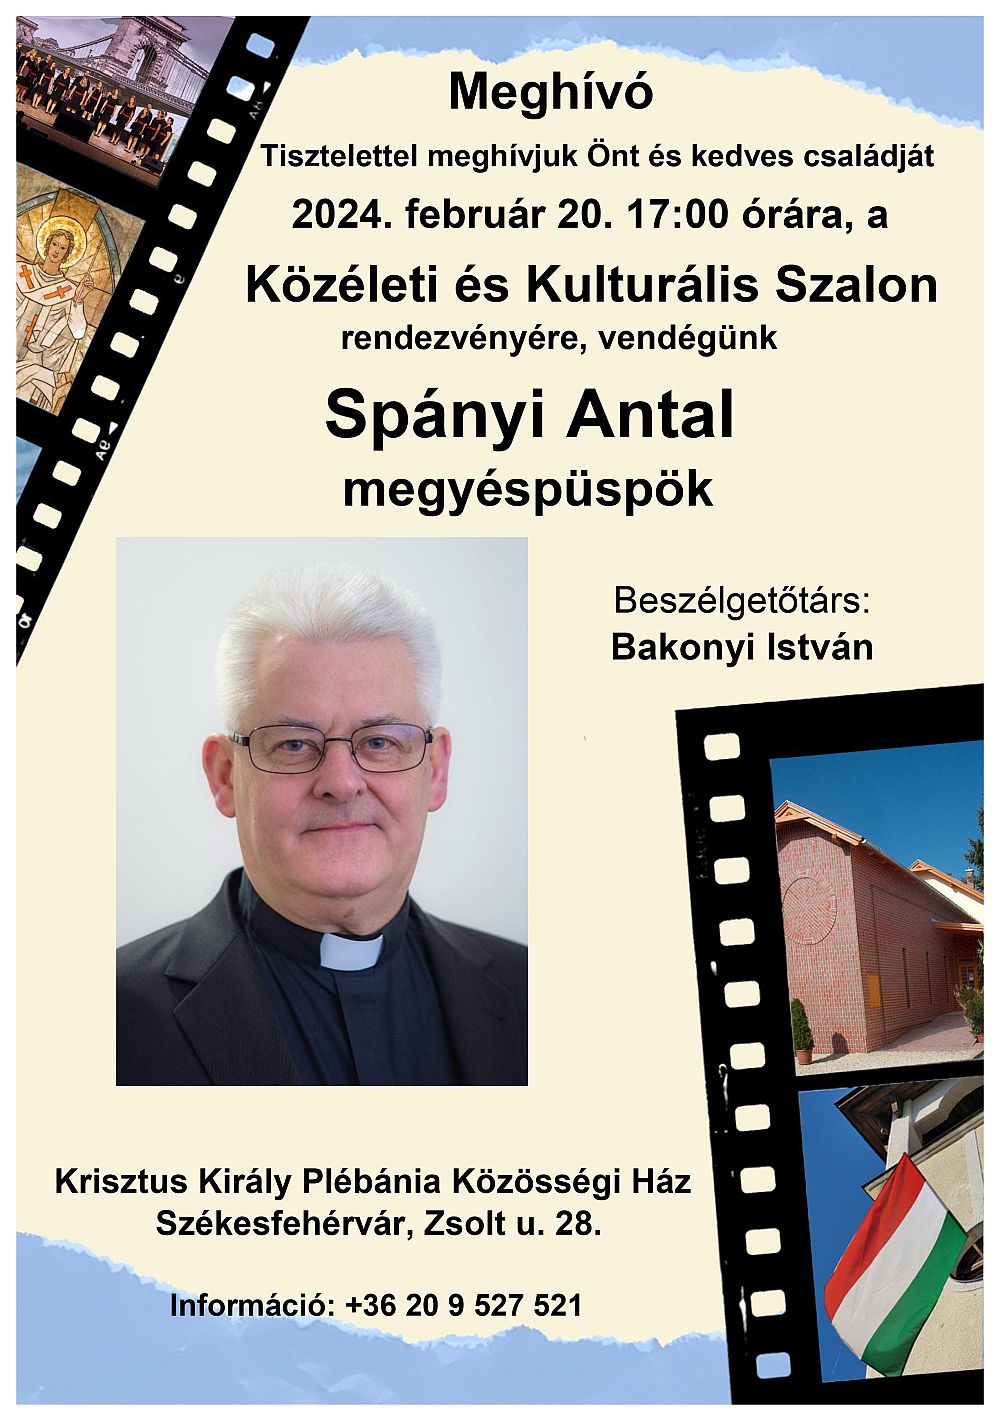 Spányi Antal megyéspüspök lesz a Közéleti és Kulturális Szalon vendége kedden